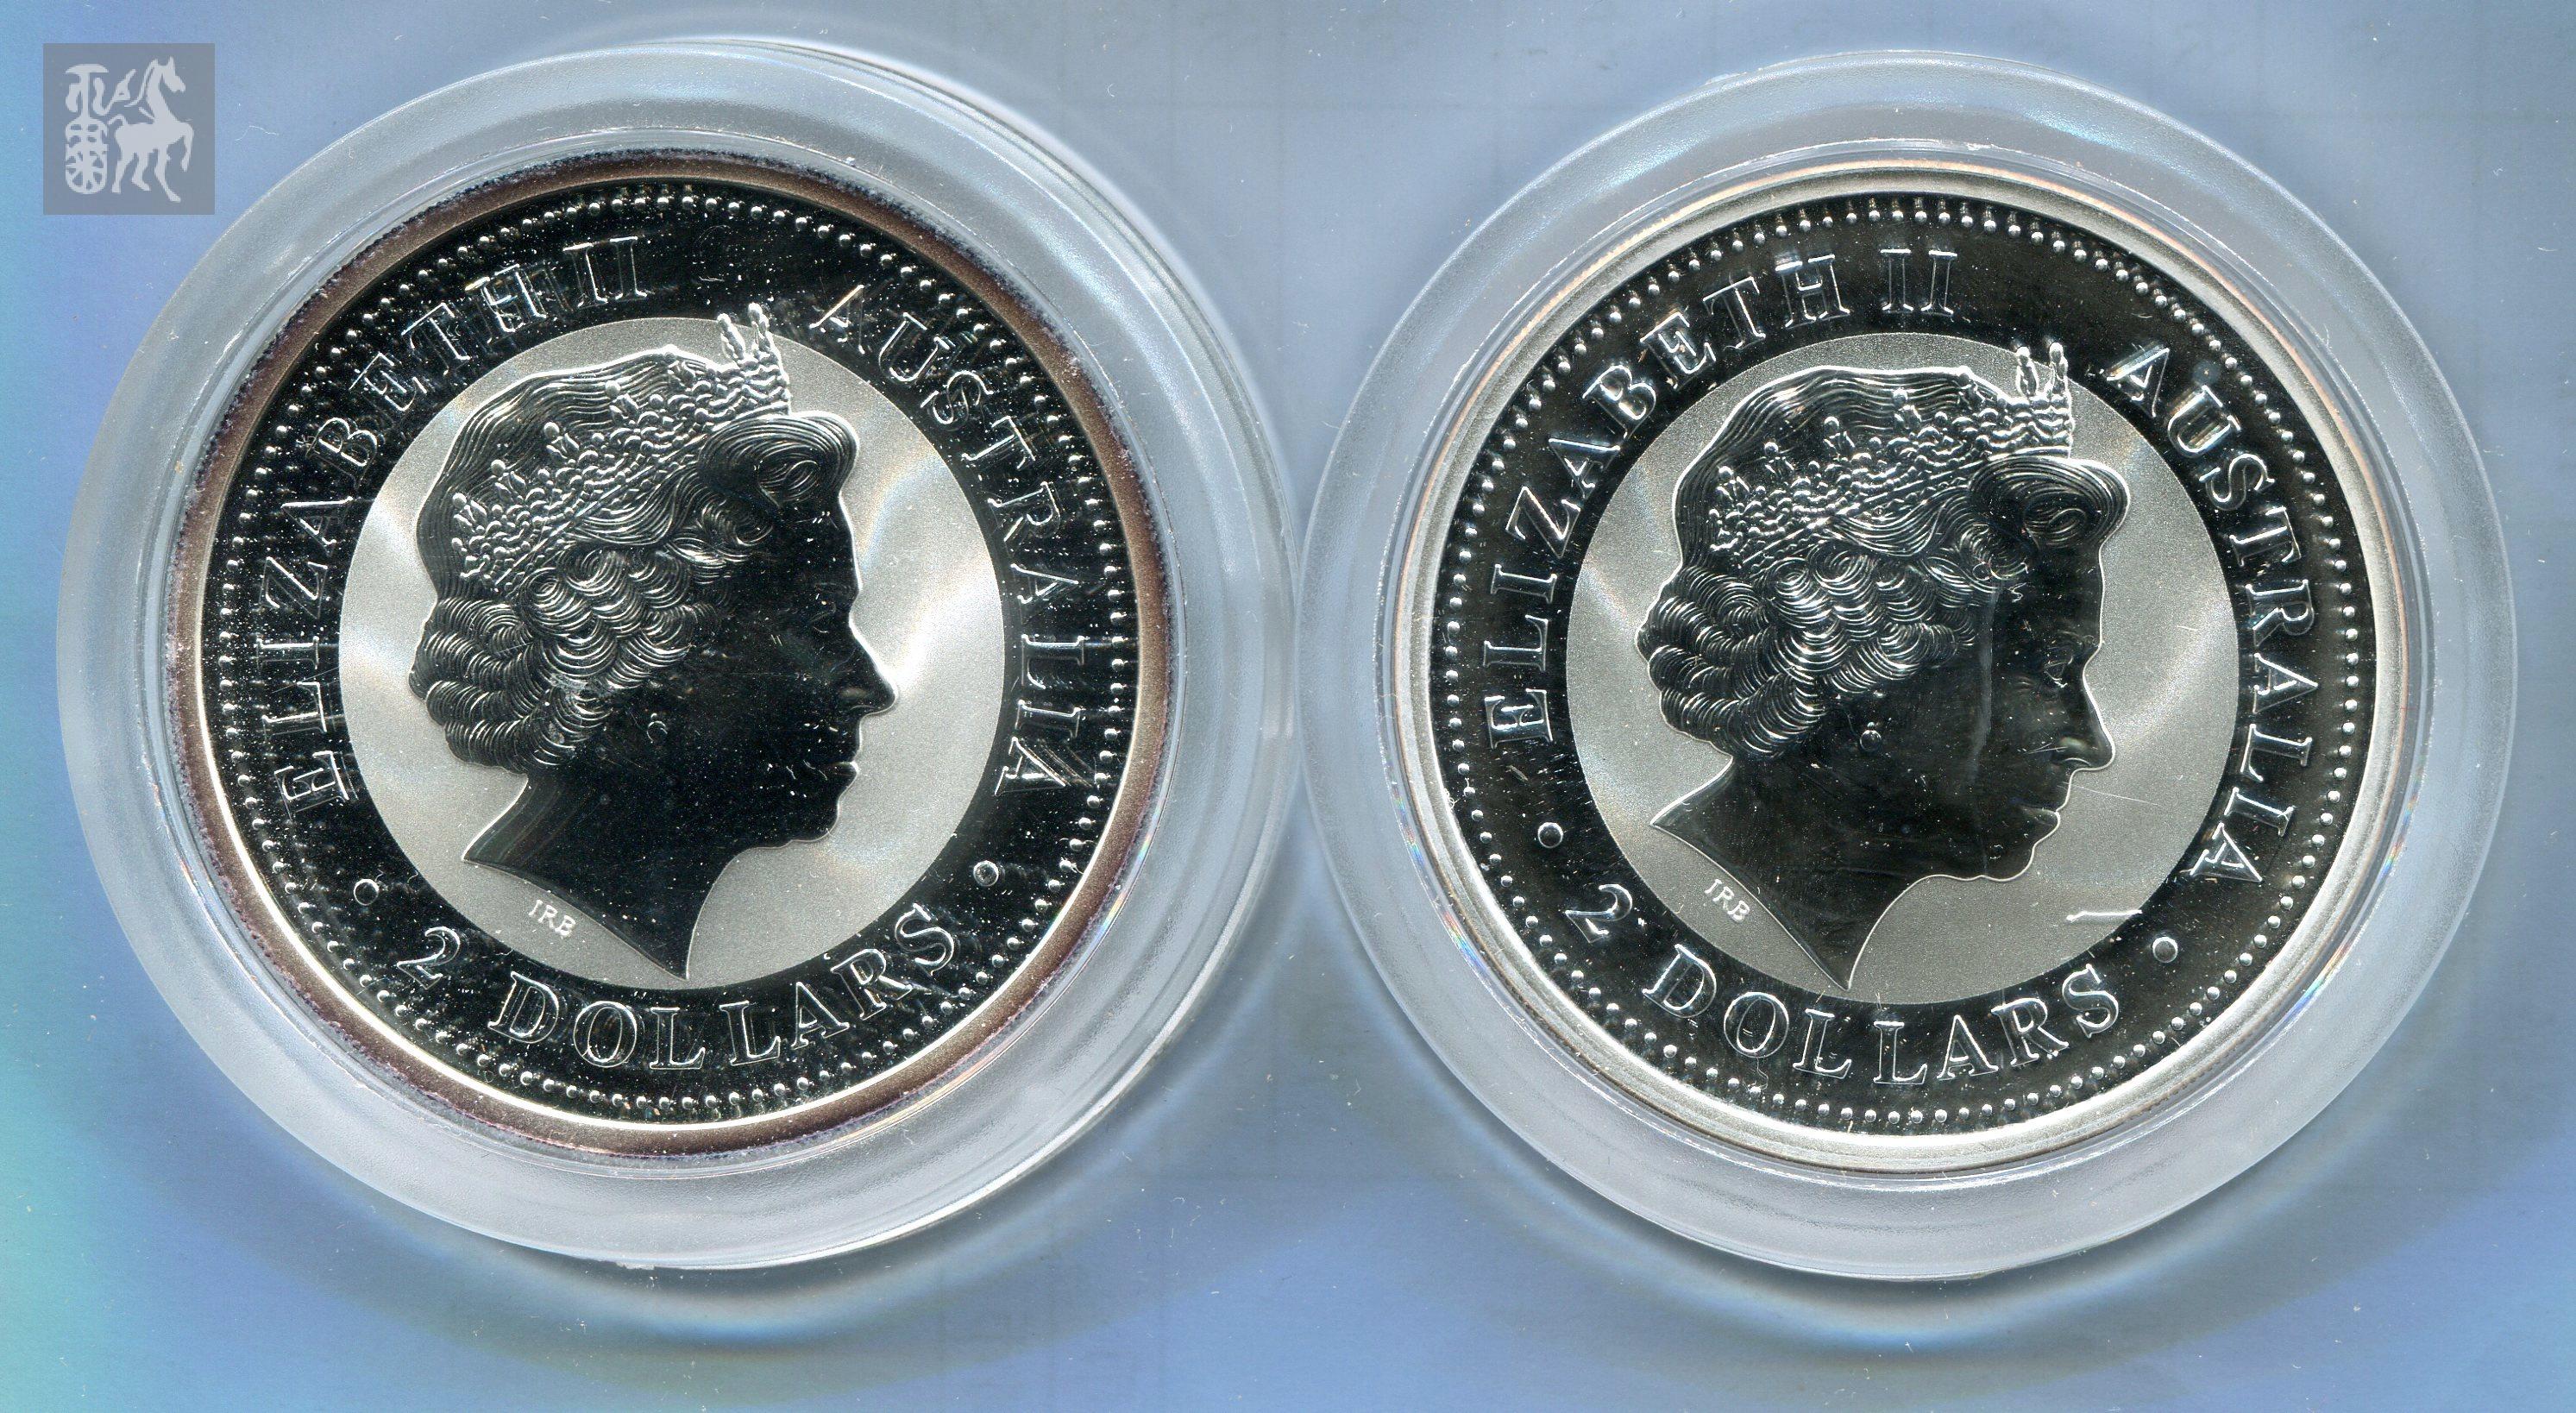 2000年澳大利亚生肖龙2盎司银币,2002年澳大利亚生肖马2盎司银币各